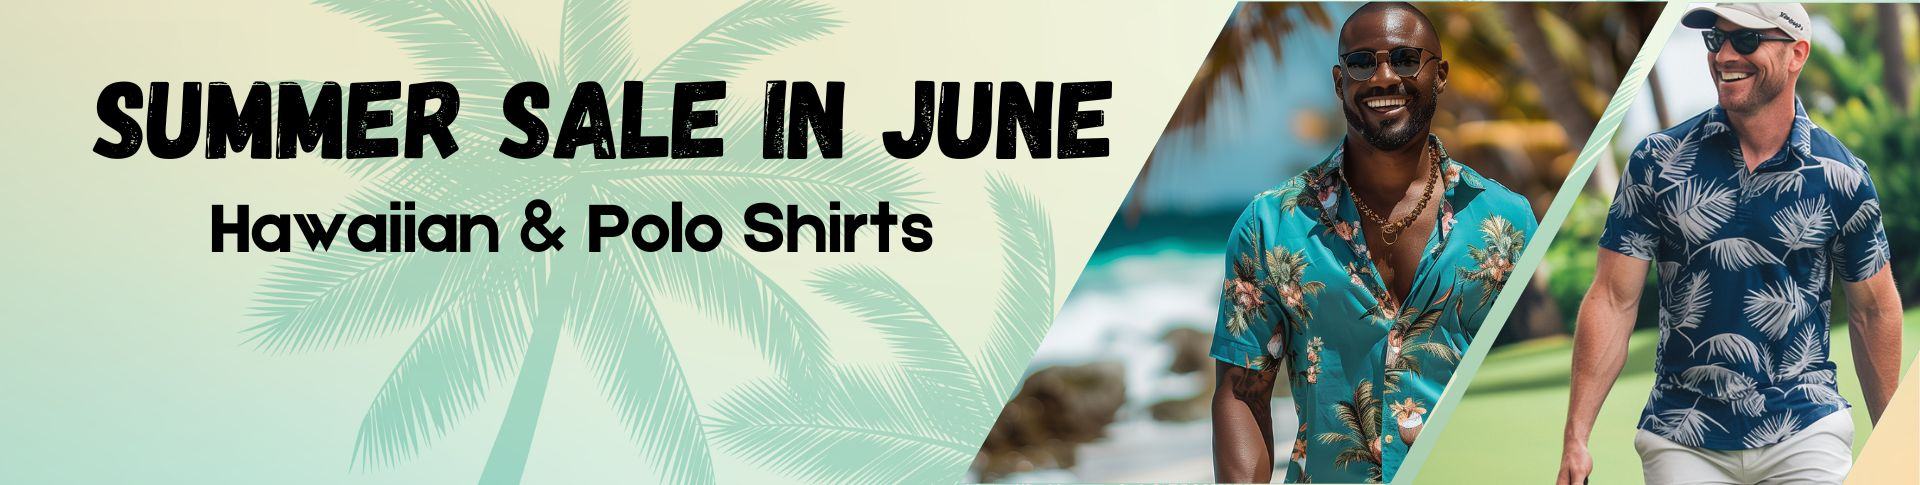 Sale Banner_Hawaiian Polo Shirts_June_1920x660